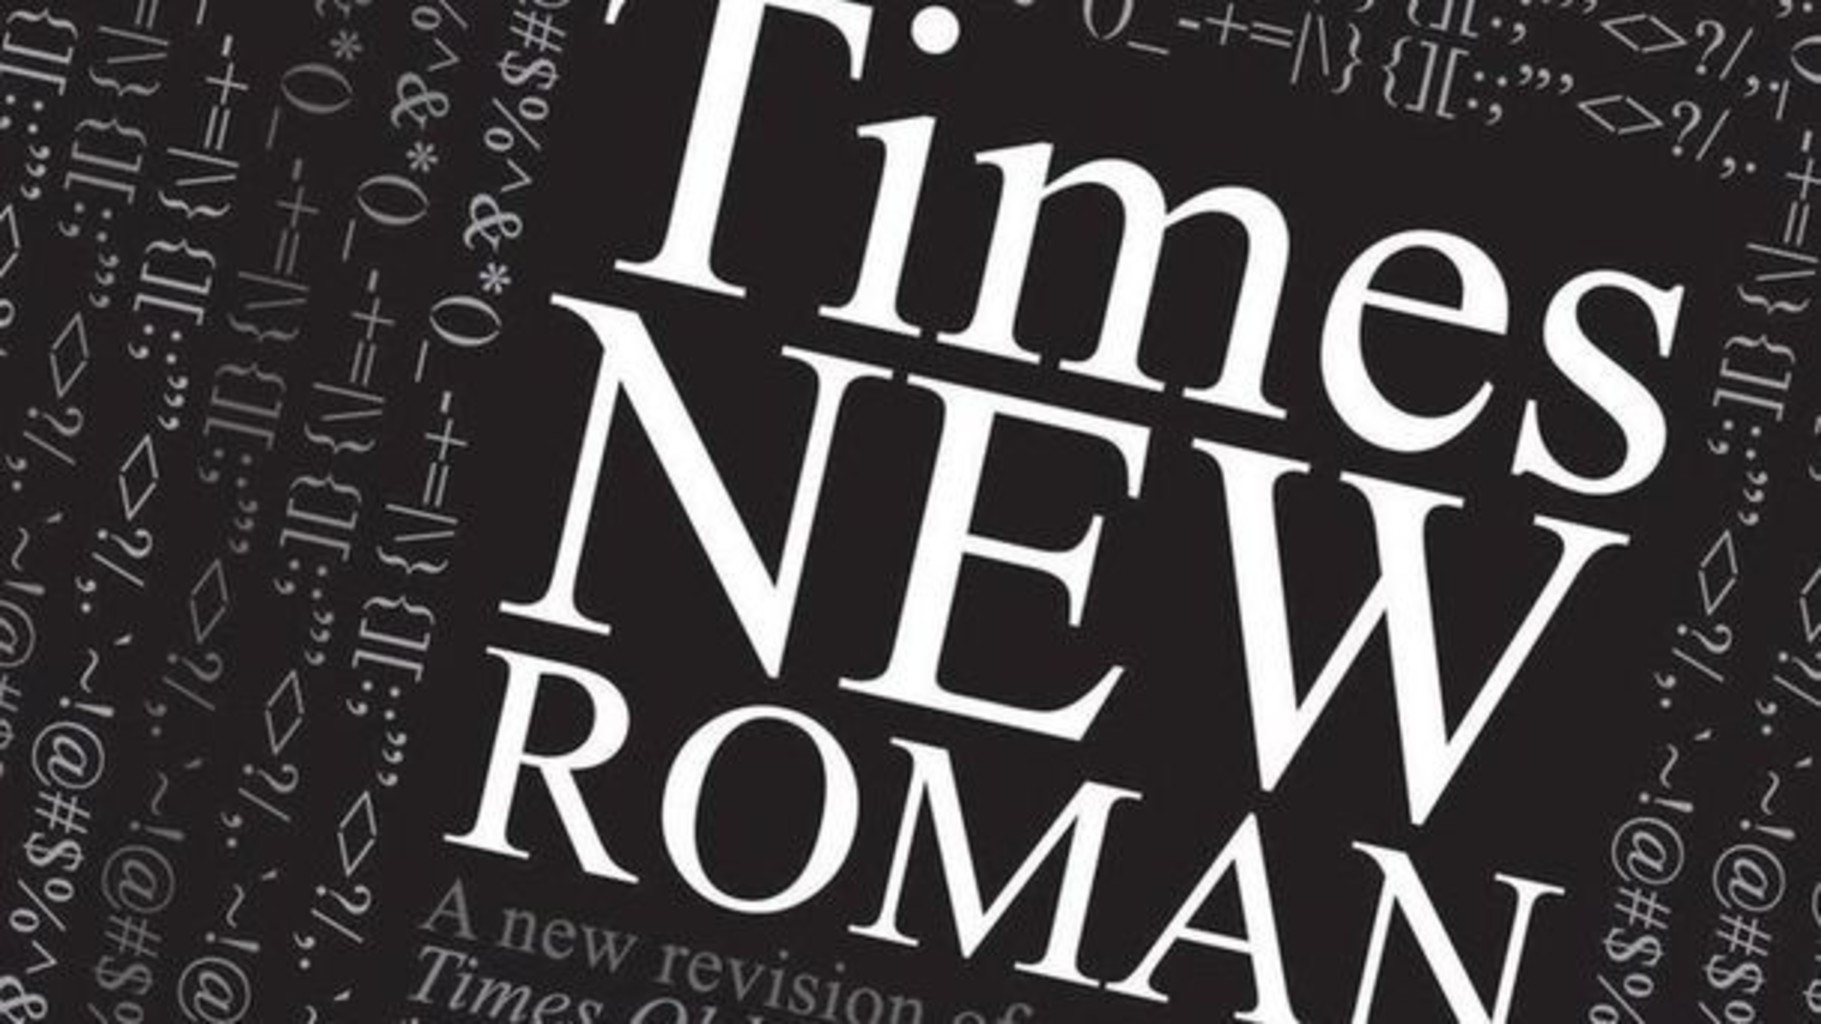 
											
											Rossiyaliklarga “Times New Roman” shriftidan foydalanish taqiqlandi
											
											